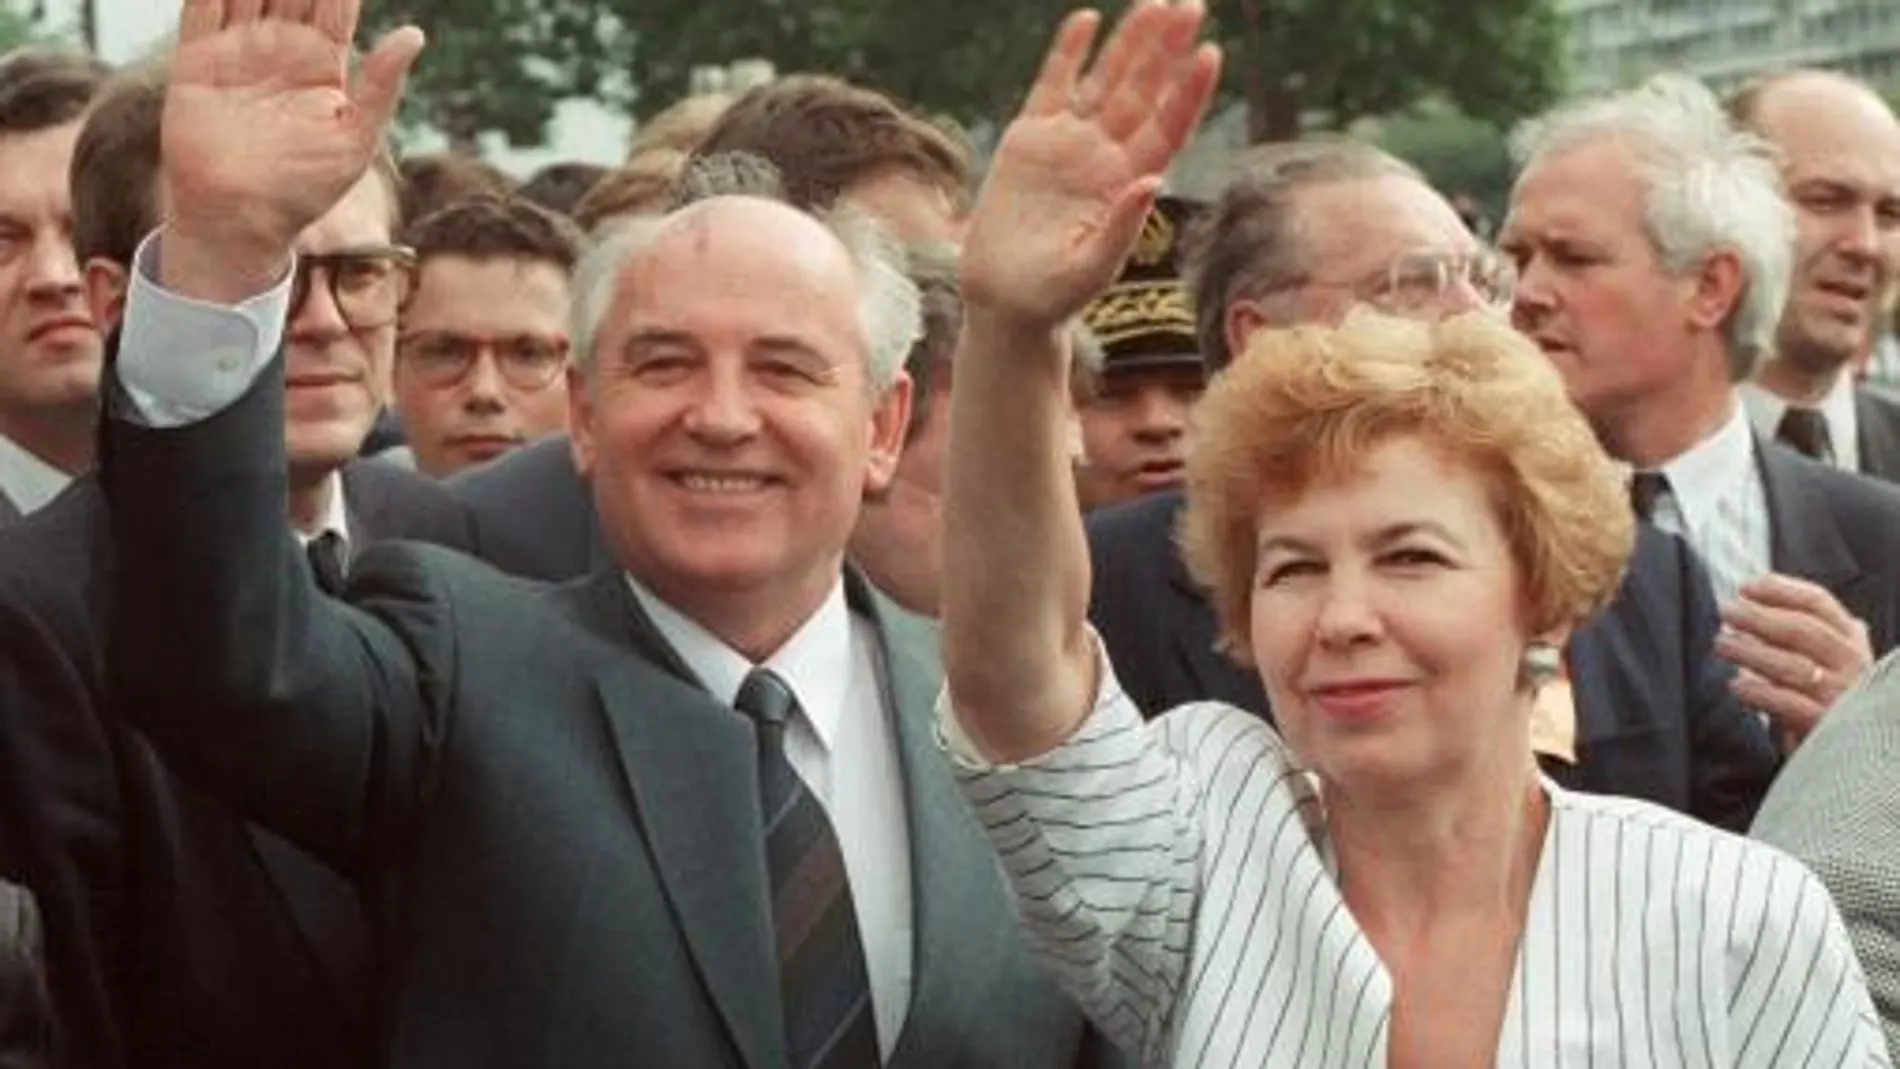 Mijail Gorbachov con su esposa Raisa Gorbachova